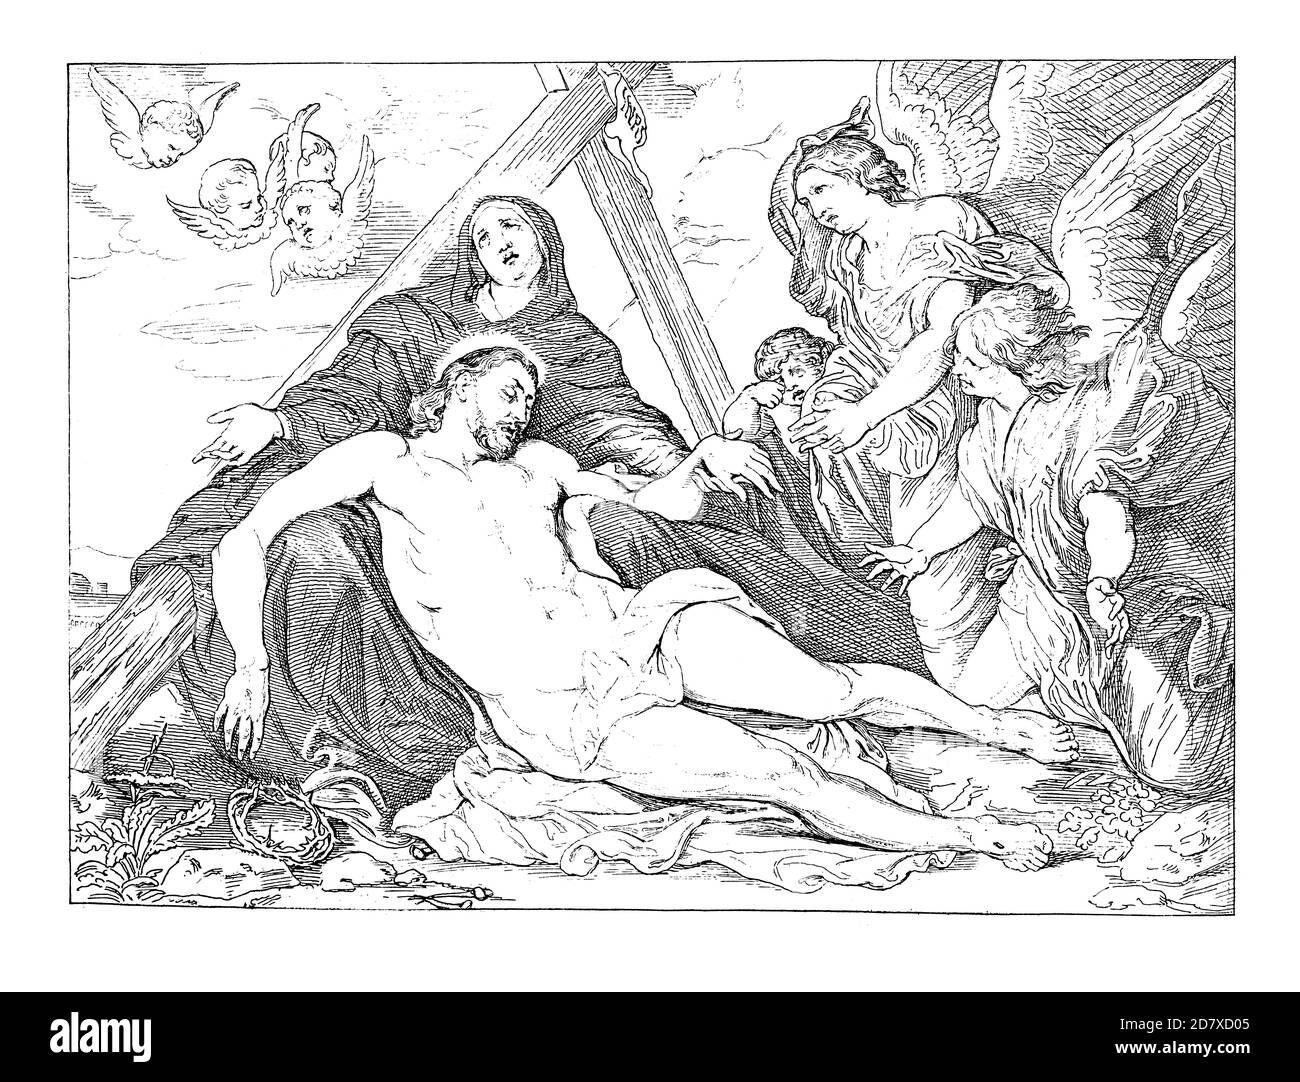 Antica incisione di deposizione della Croce, pittura di Anthony van Dyck. Illustrazione pubblicata in Systematischer Bilder Atlas - Bauwesen, Ikonog Foto Stock